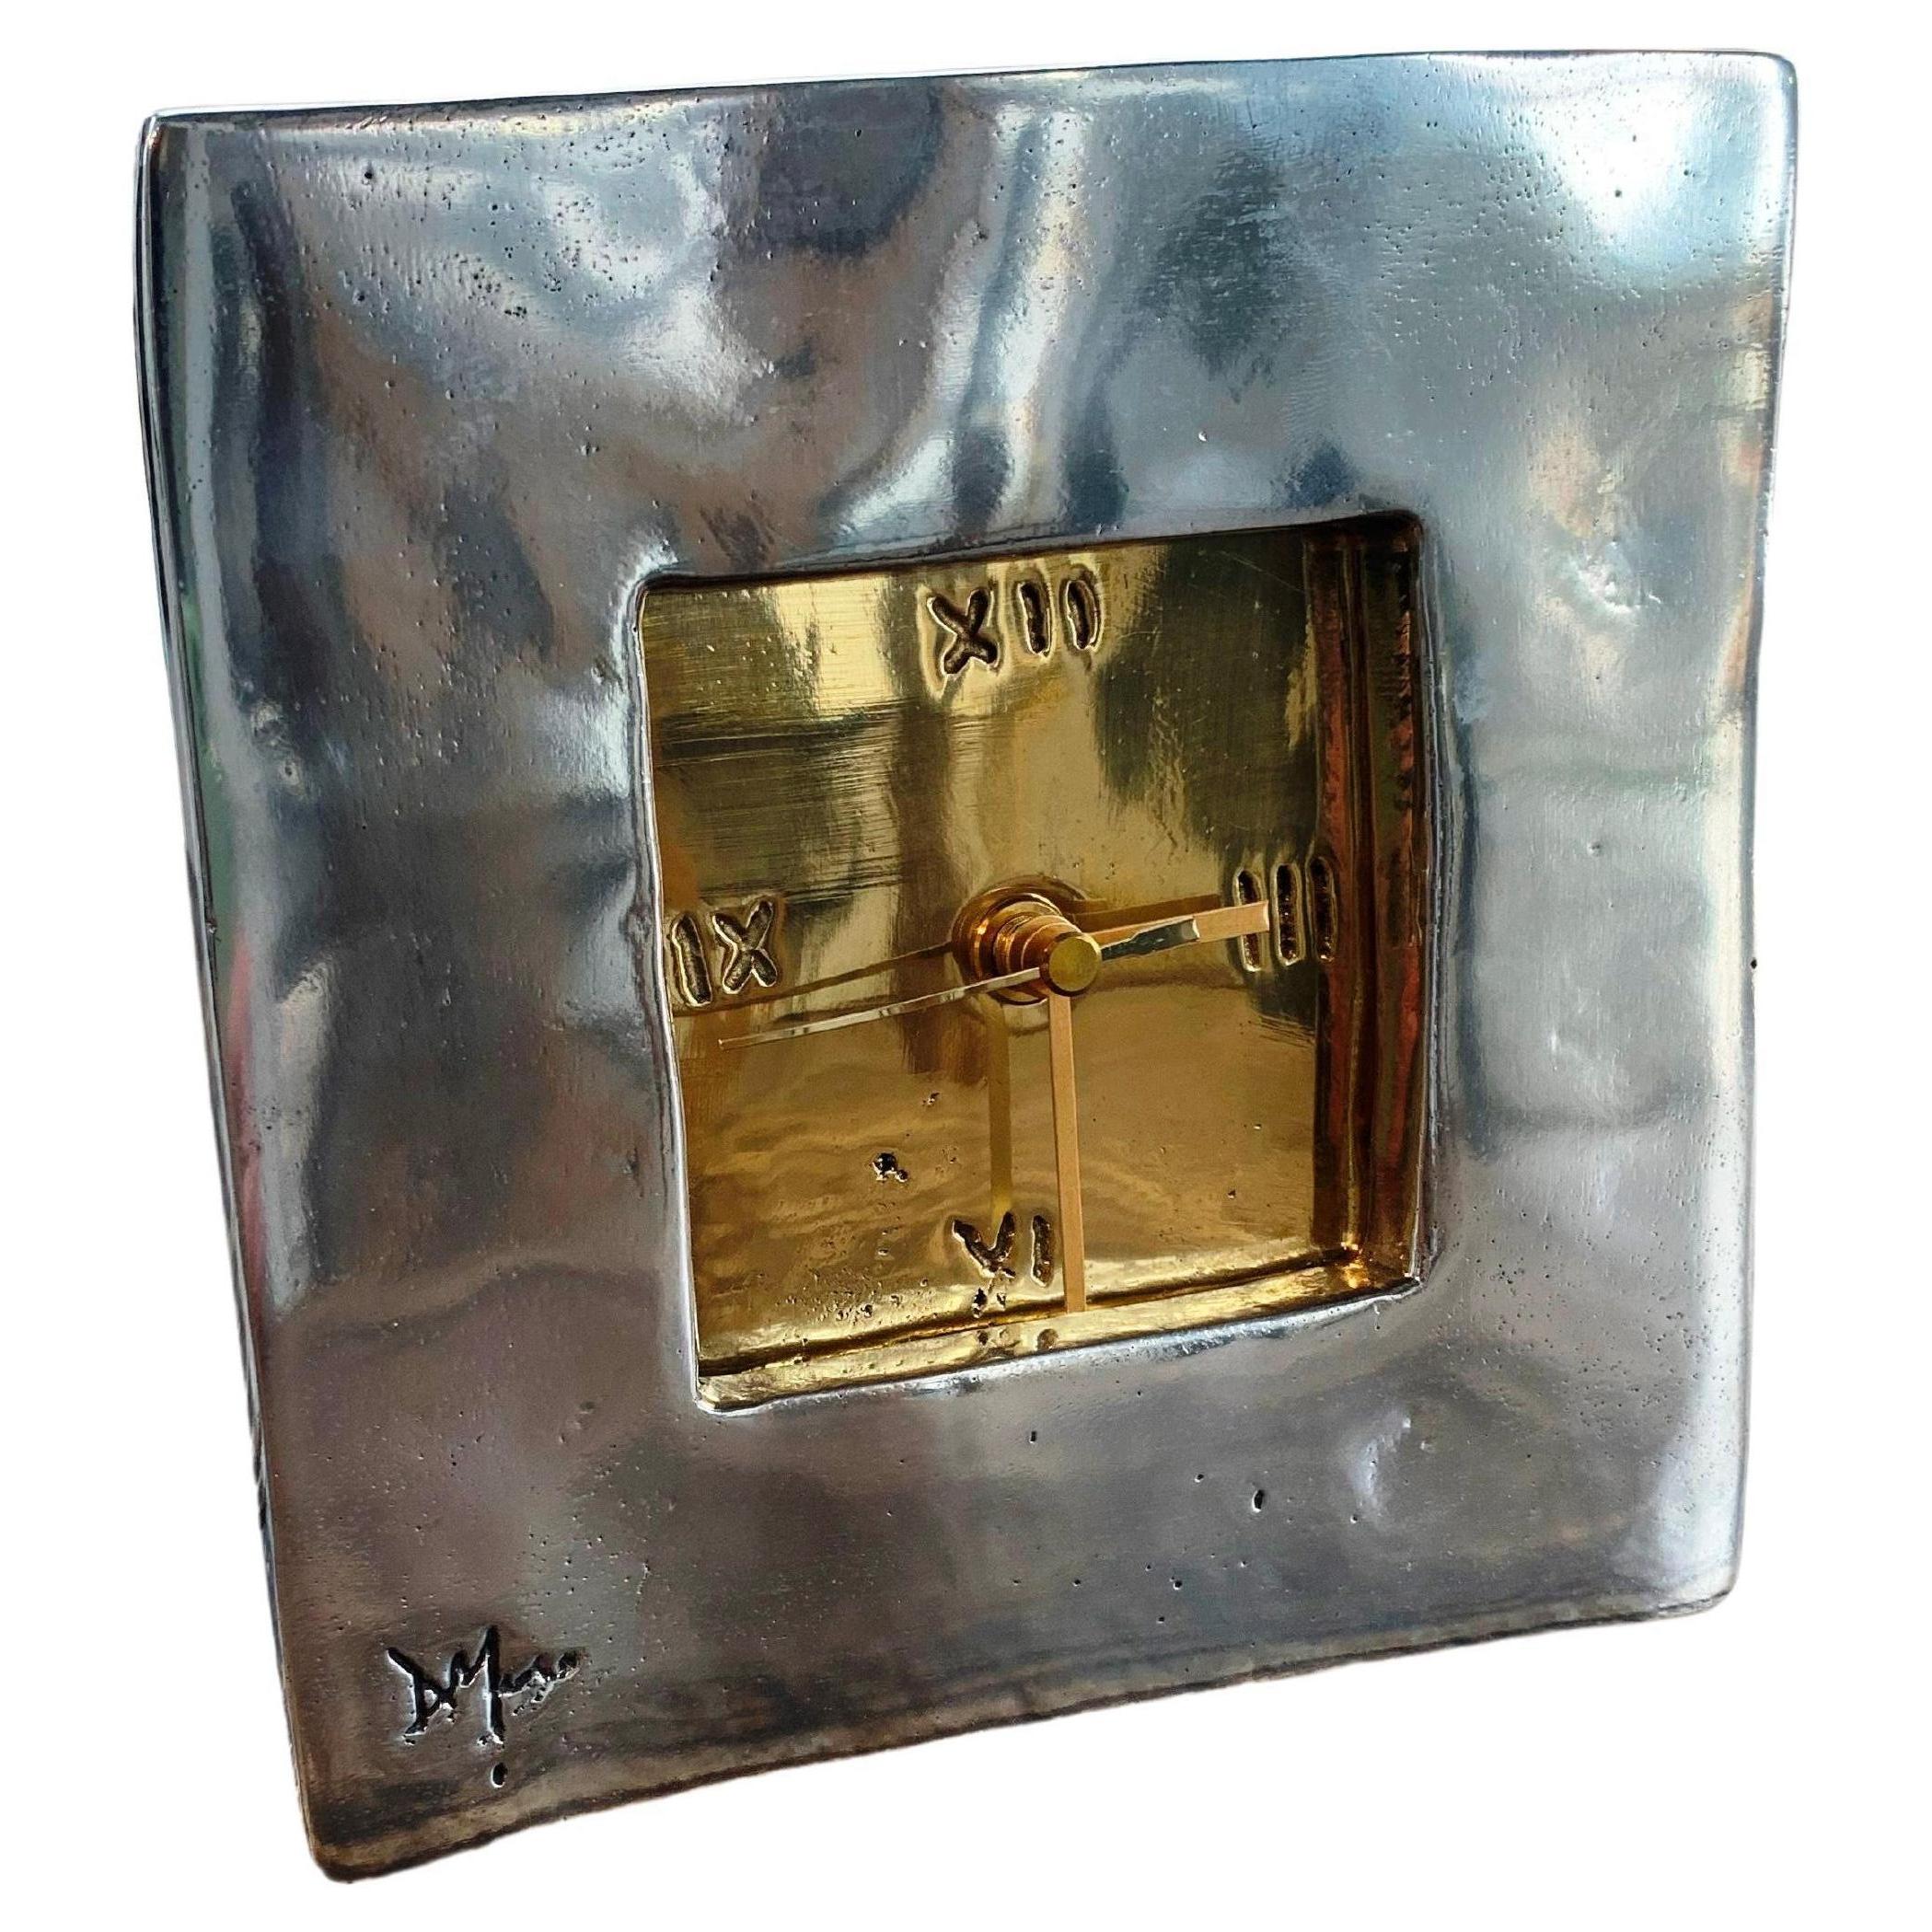 DO16 Square  Clock, Gold and aluminium coloured,  Solid cast Brass & Aluminium